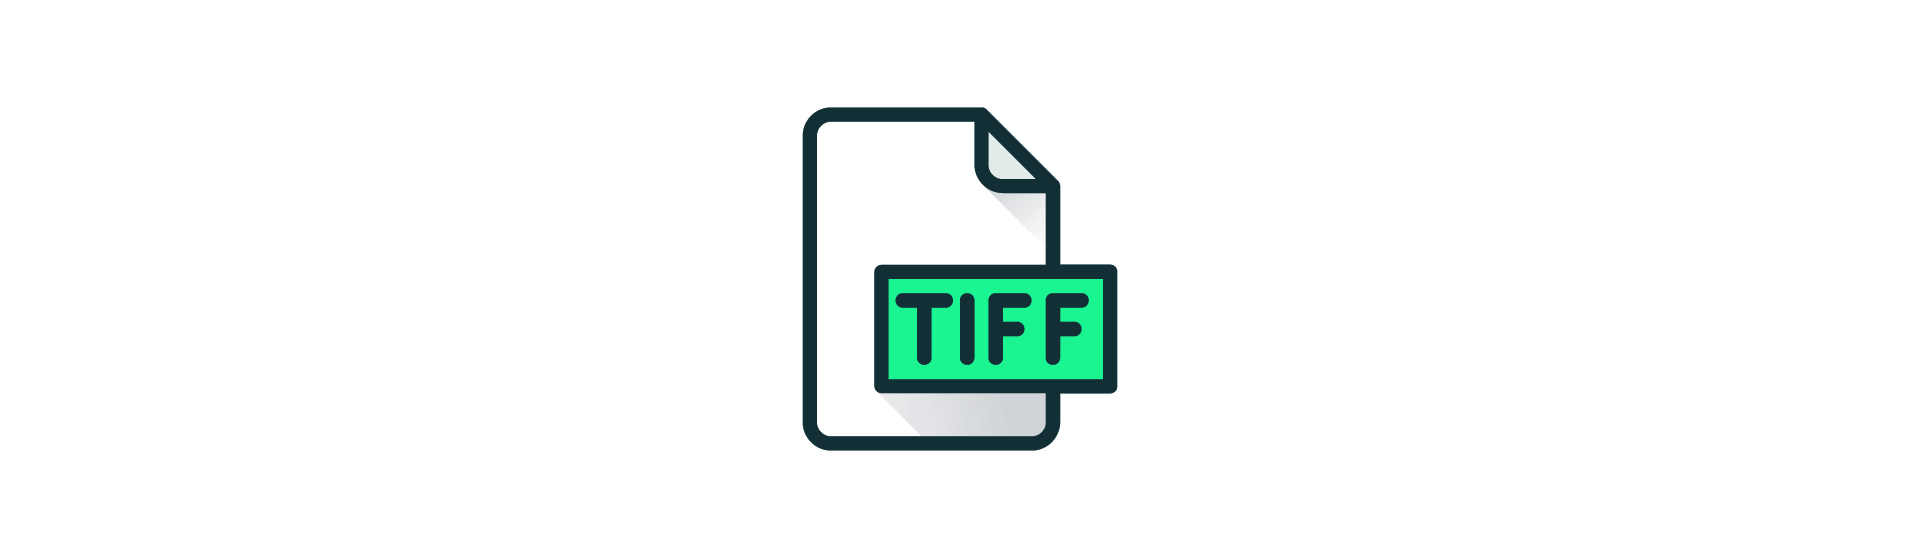 1 tiff. TIFF file. TIFF.